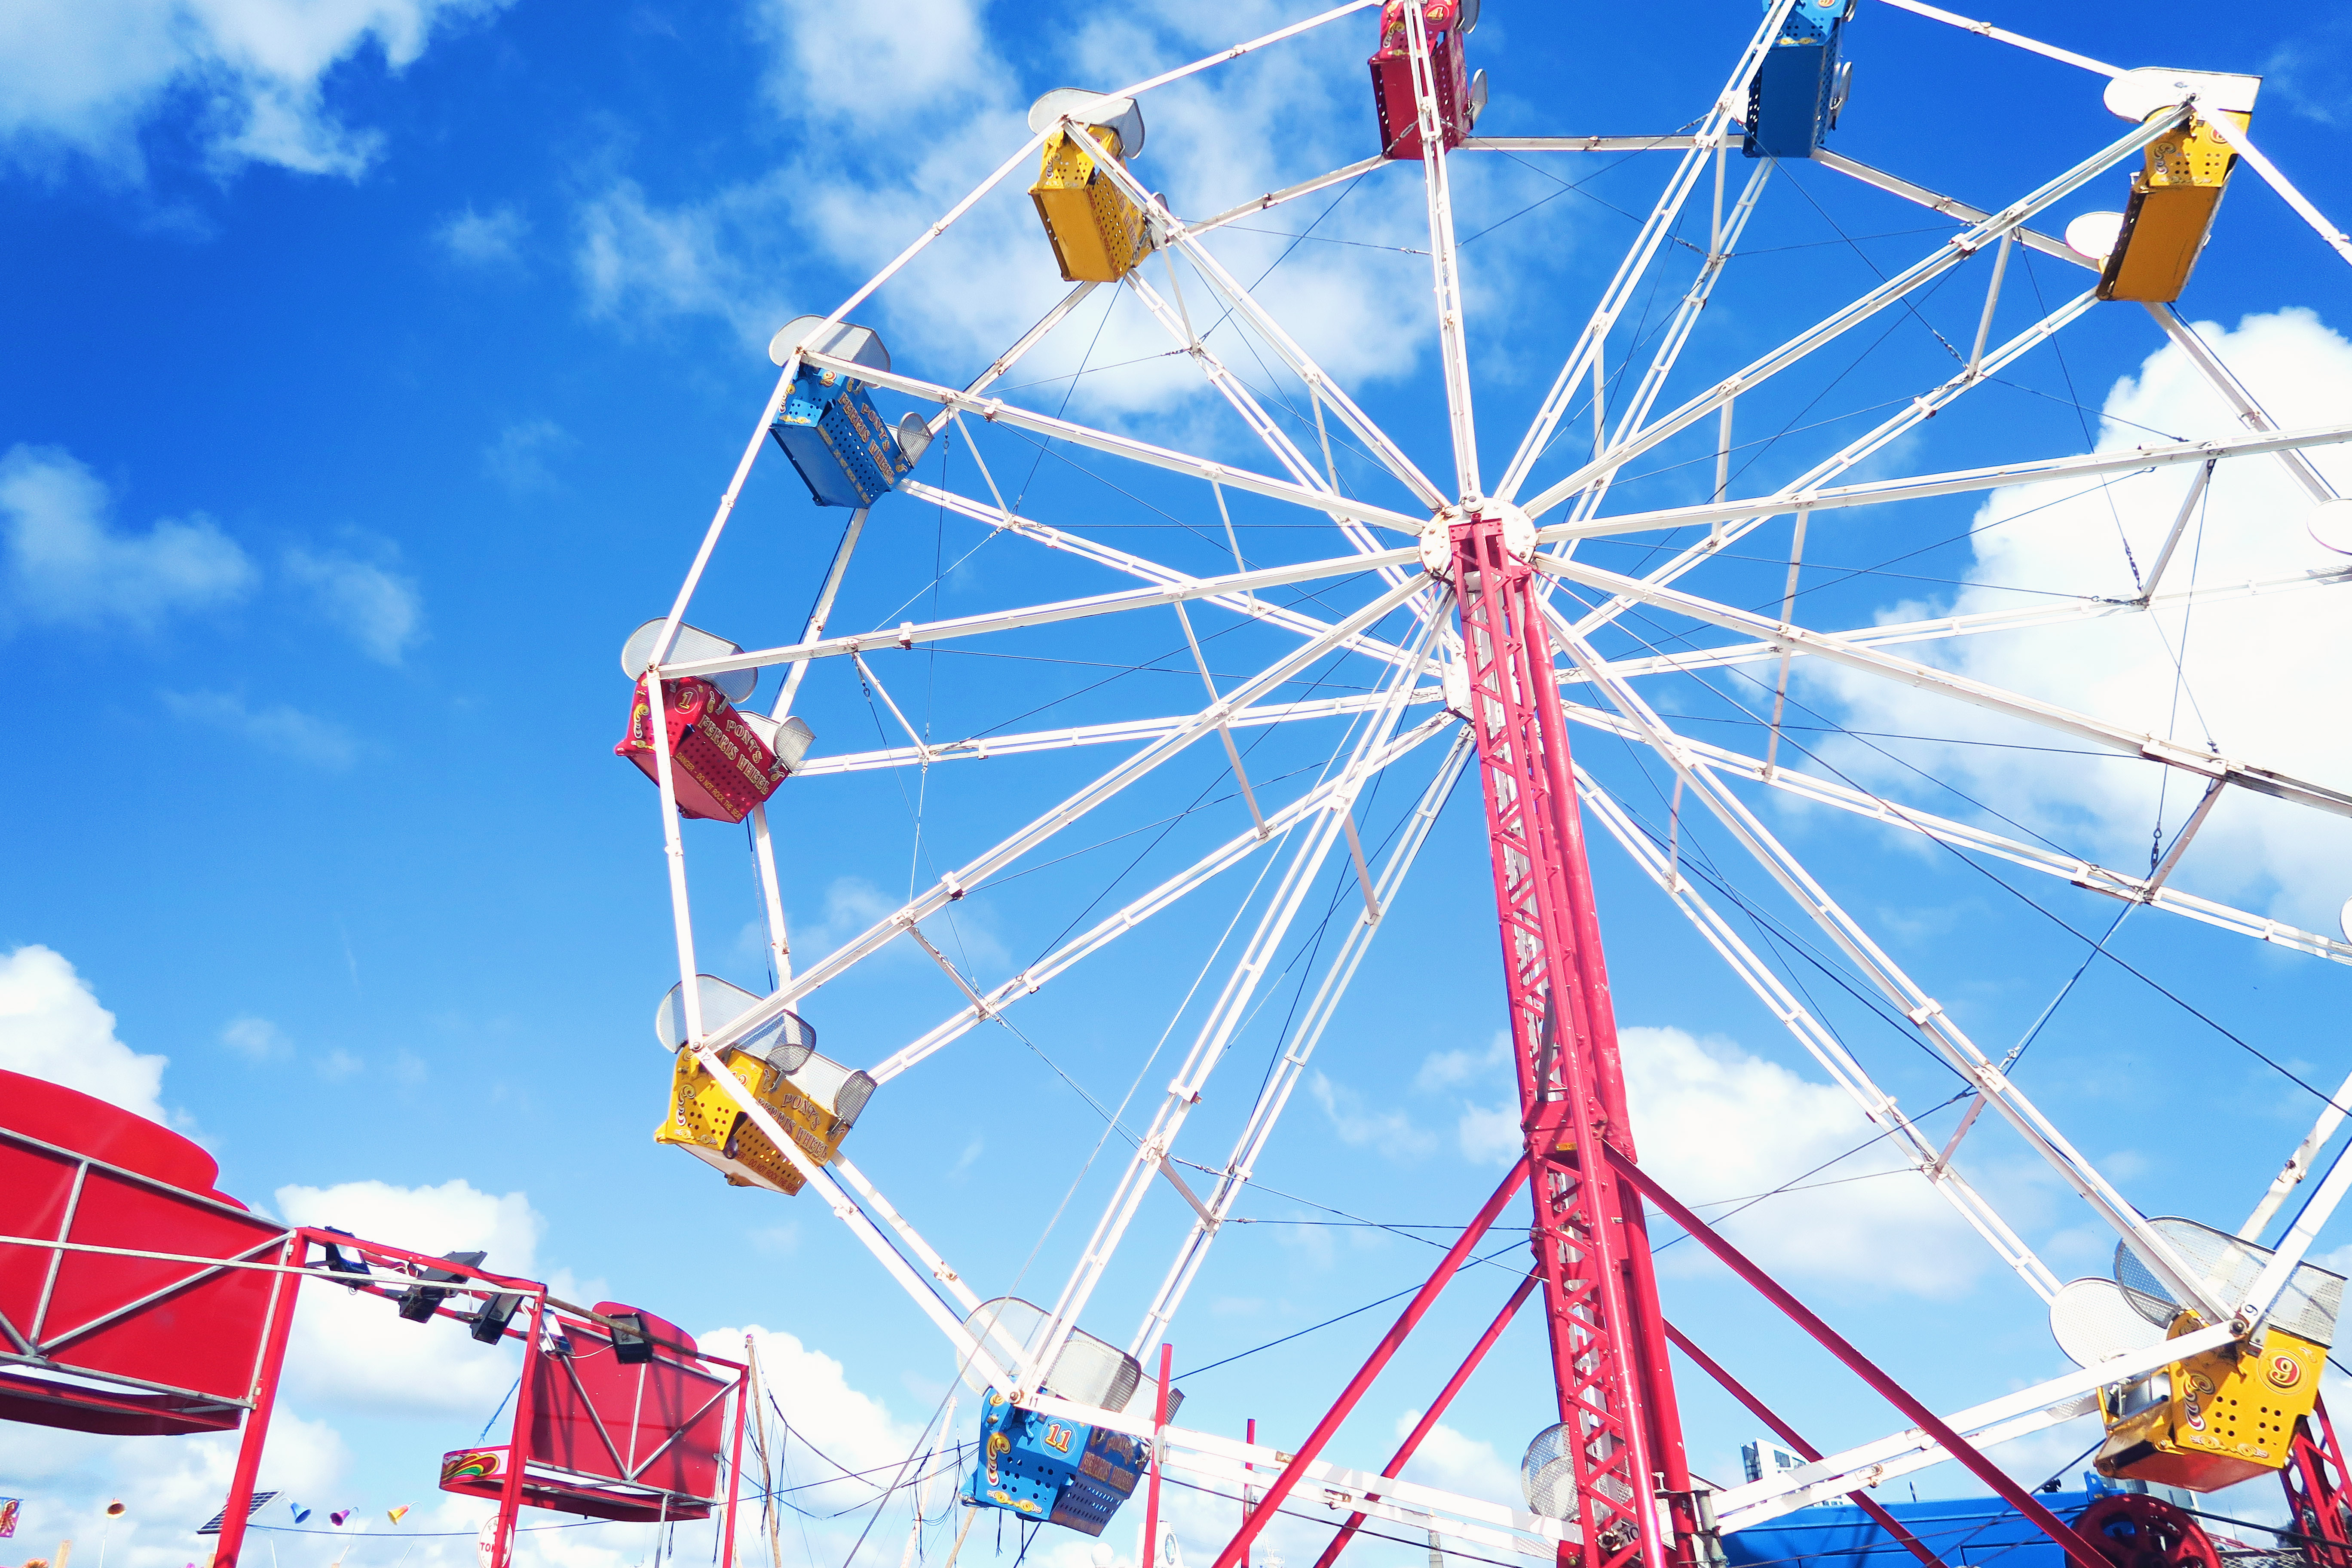 Ferris wheel against very blue sky.